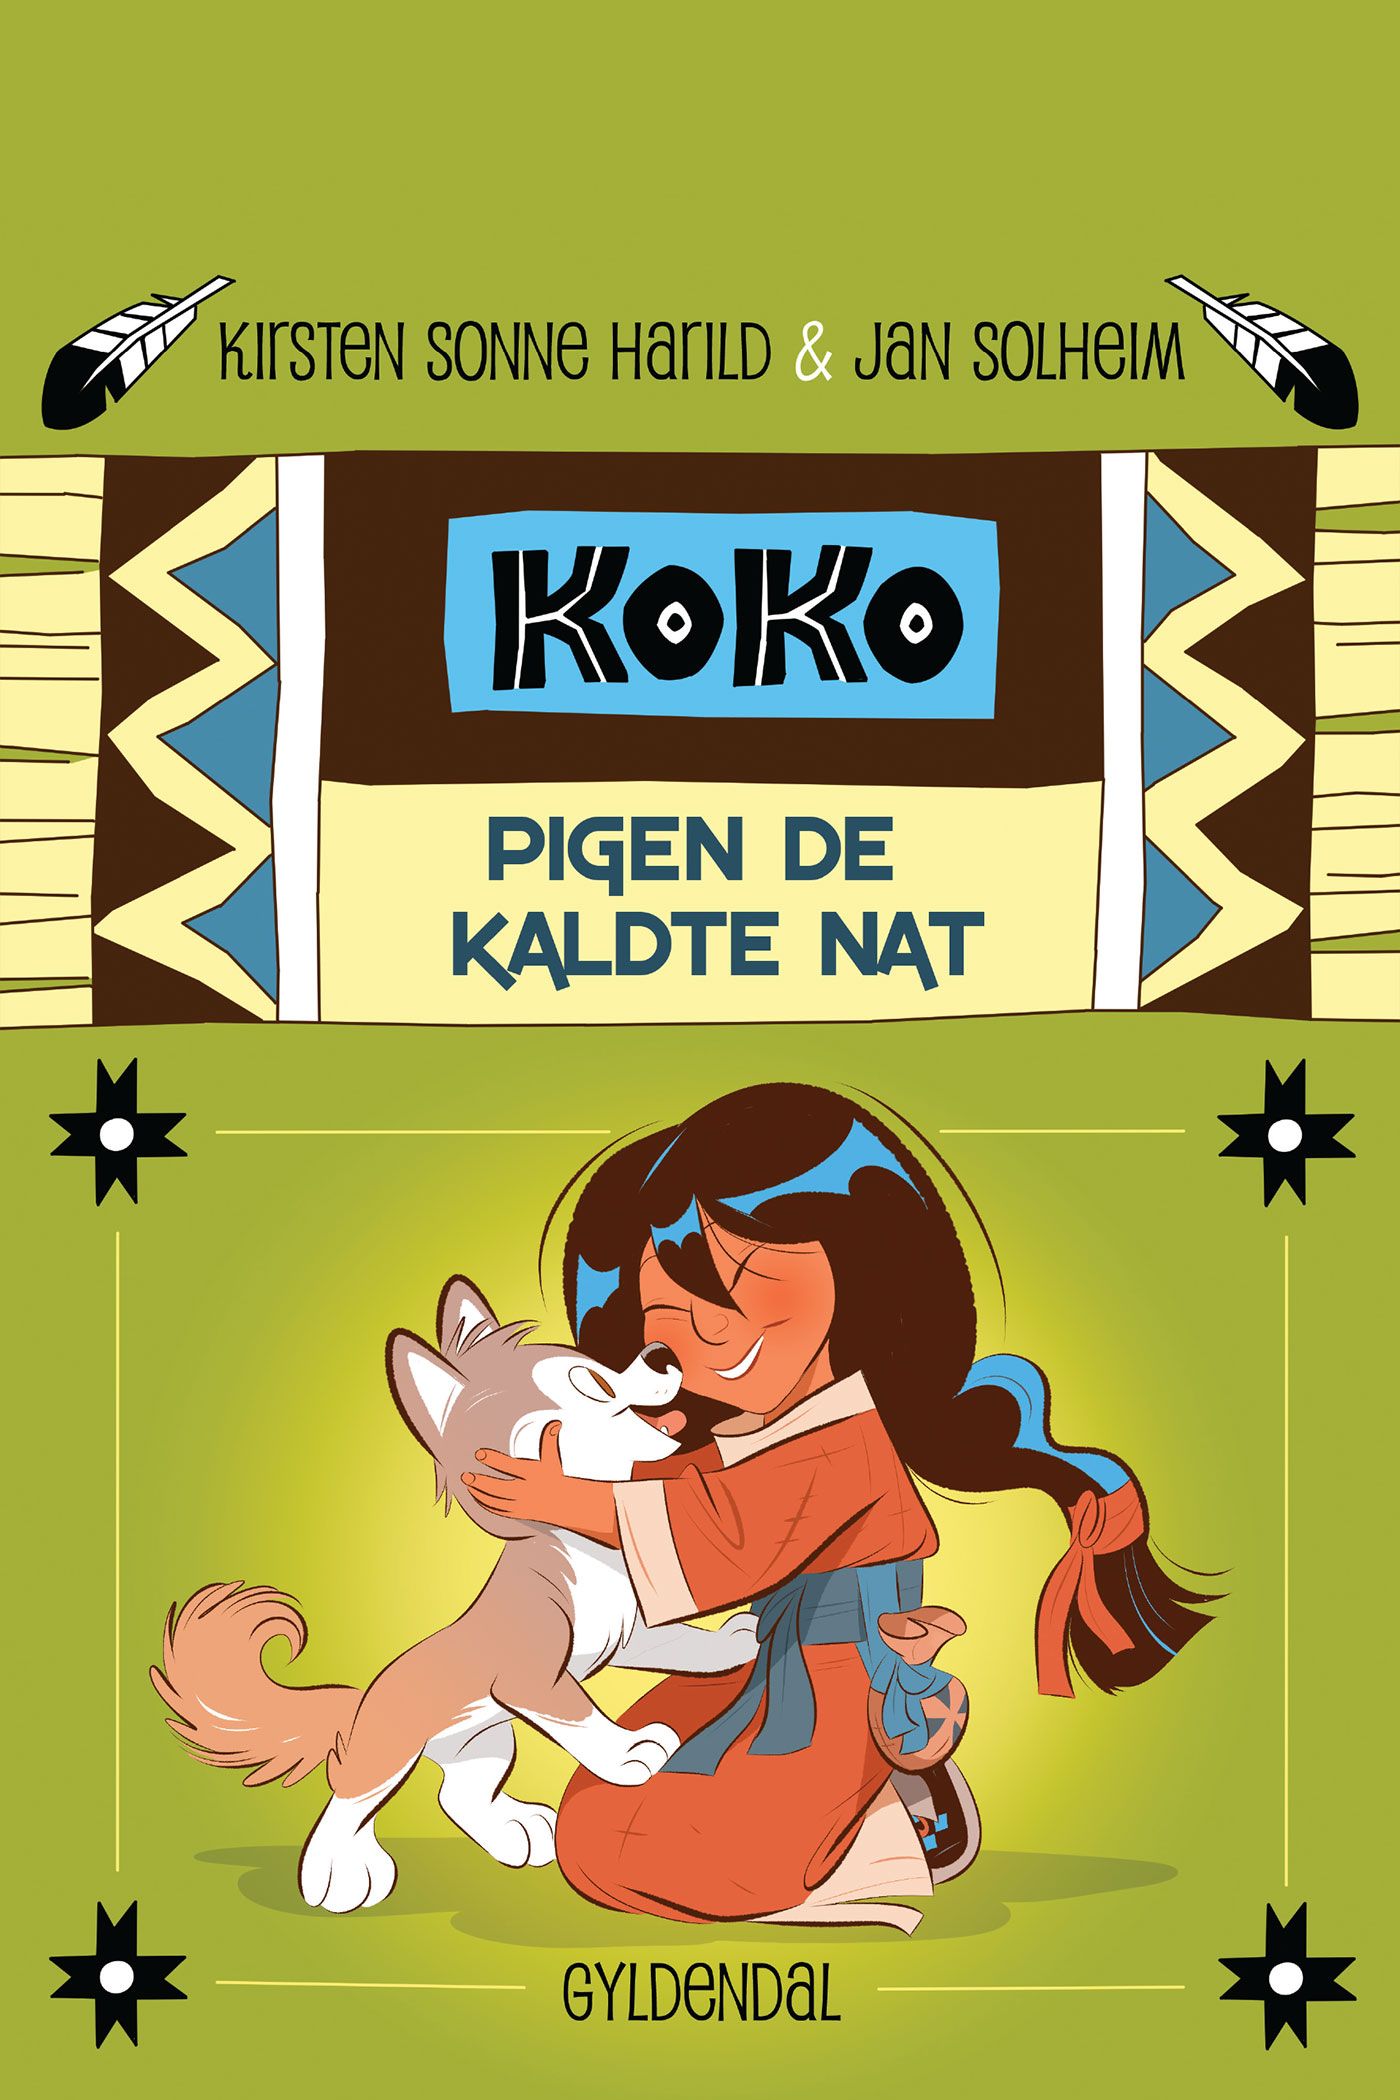 Koko 1 - Pigen de kaldte nat, e-bok av Kirsten Sonne Harild